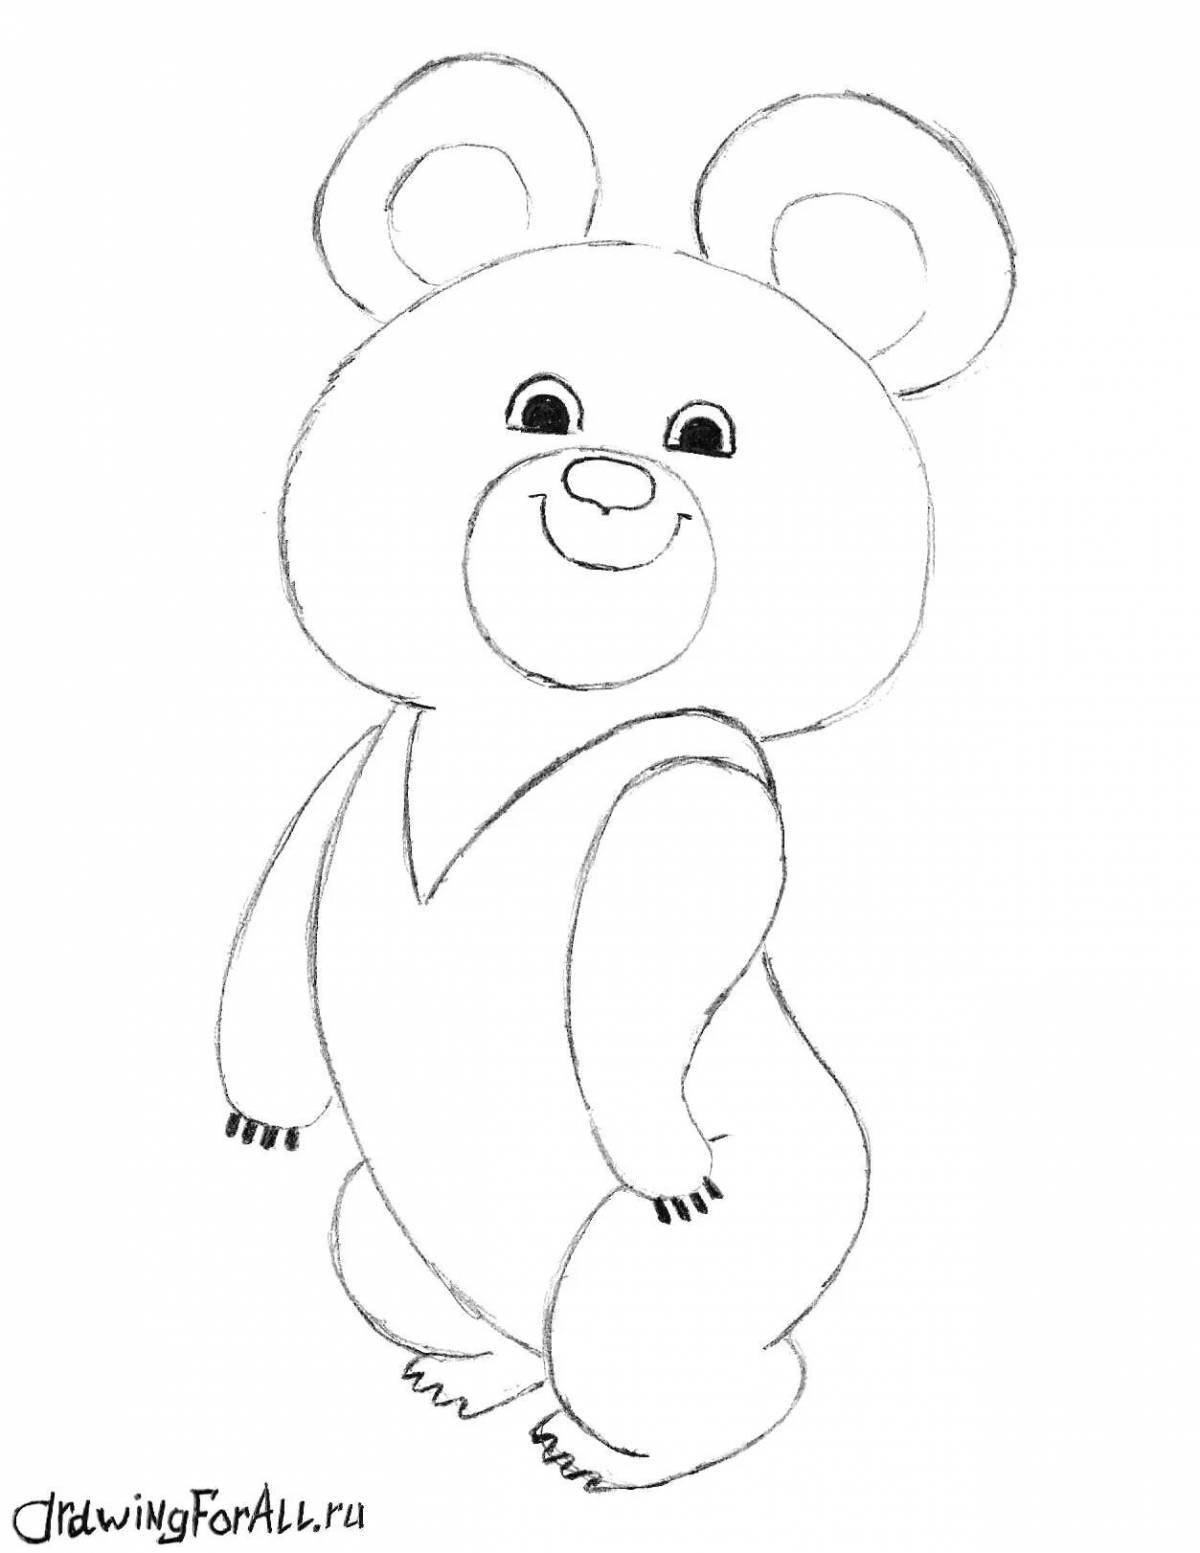 Royal Russian bear coloring page